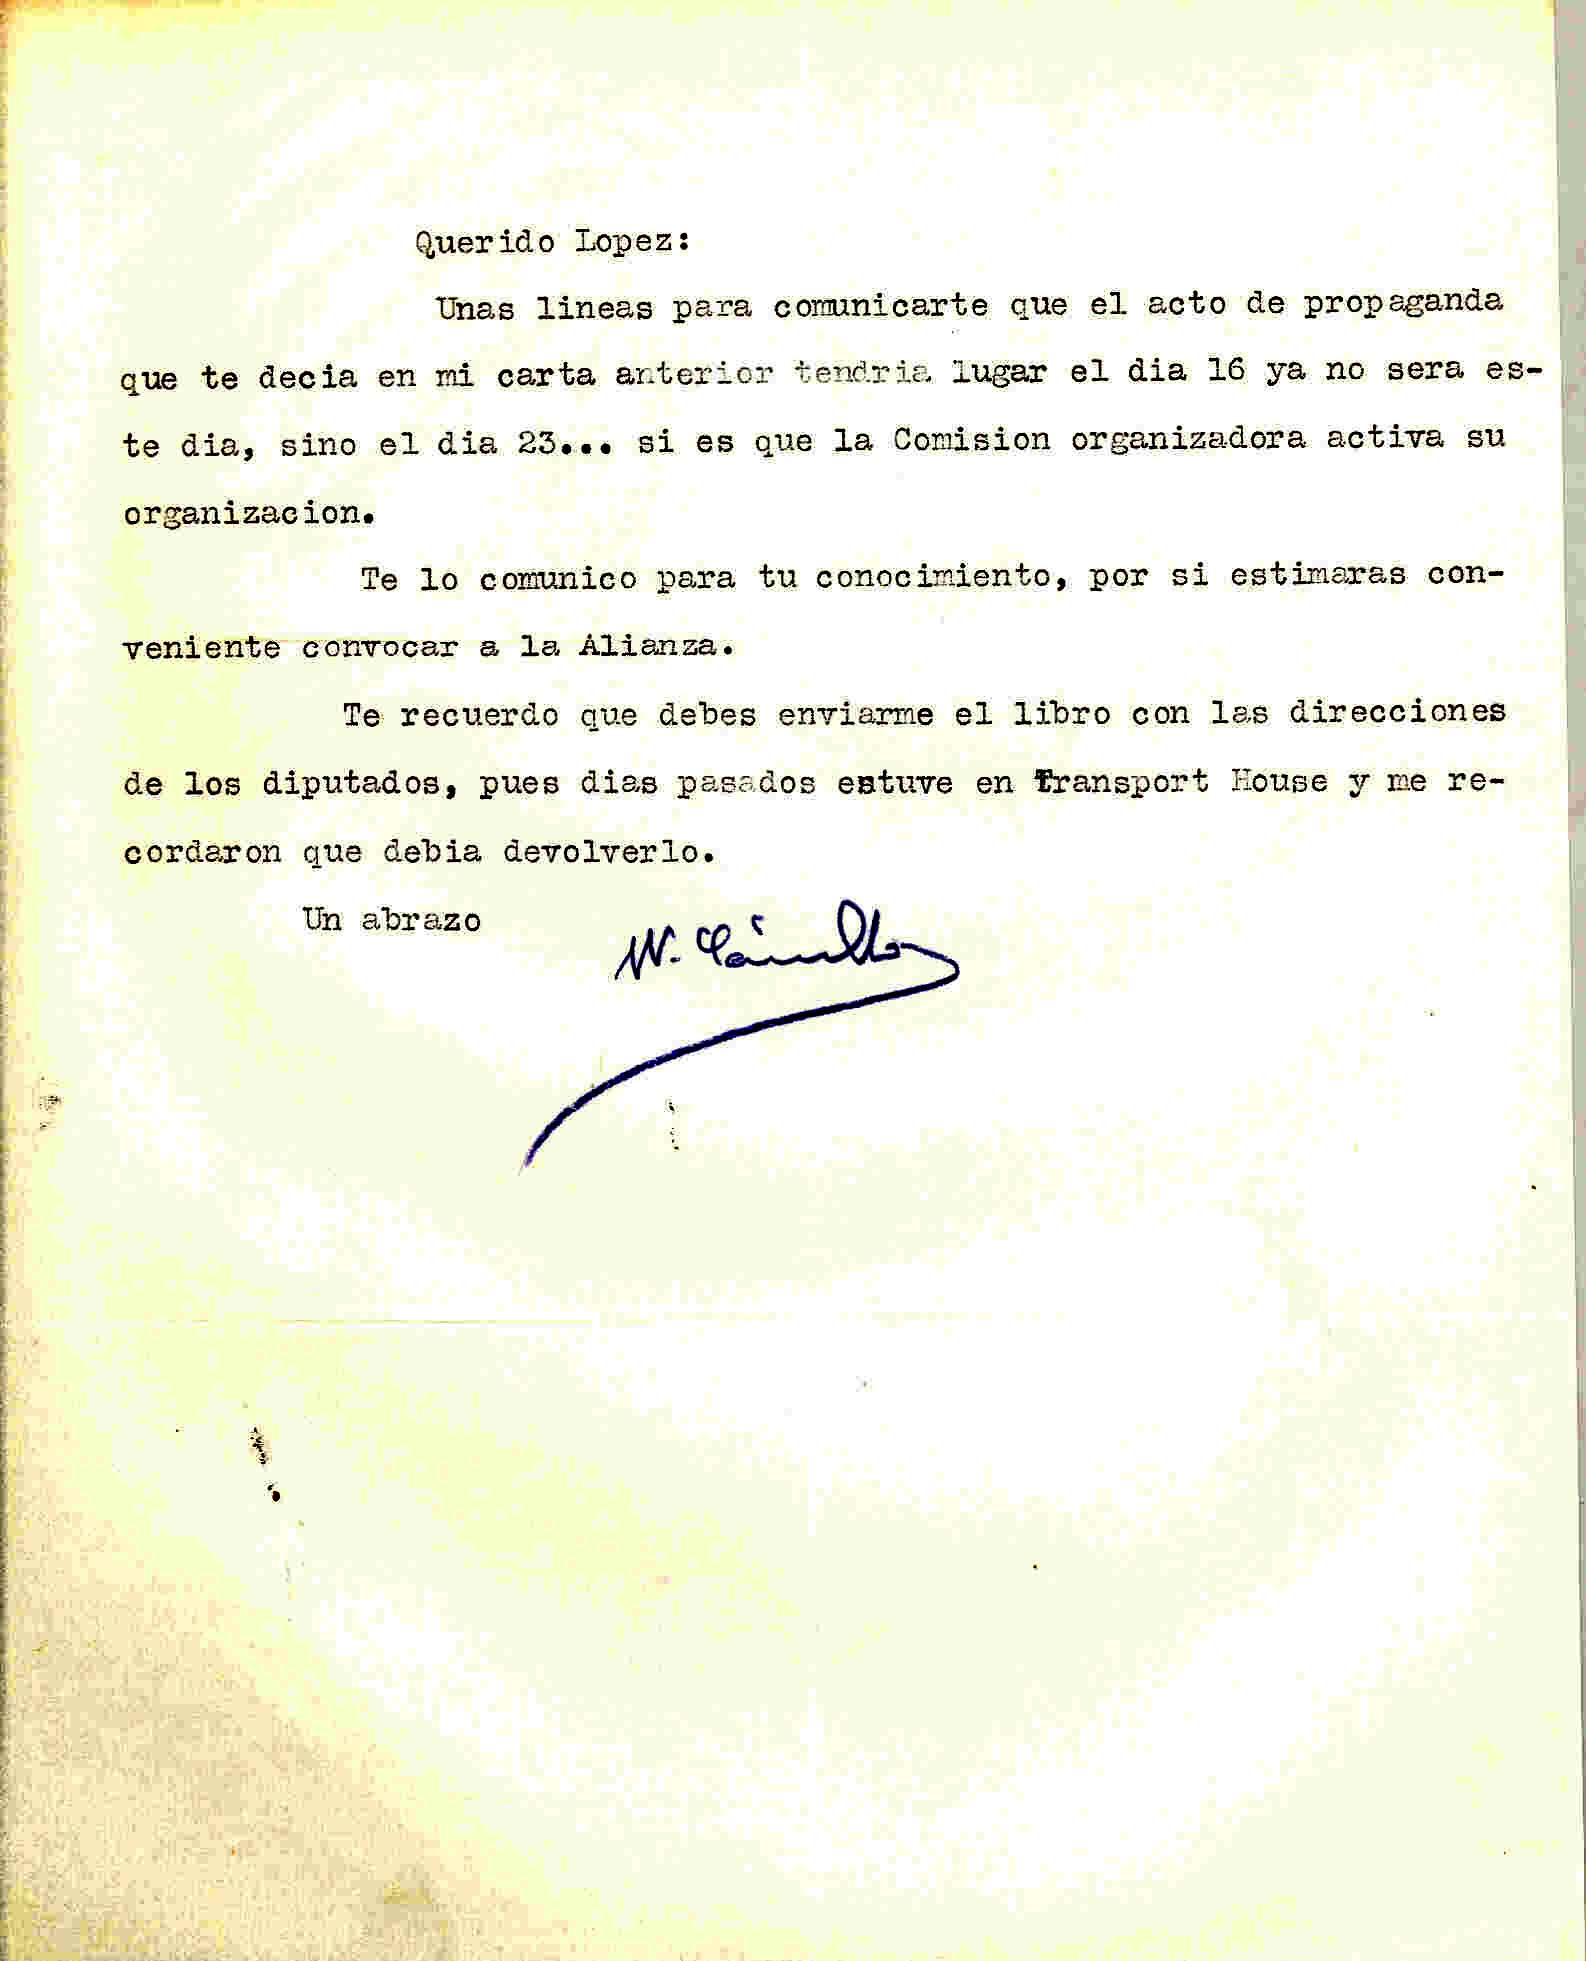 Carta de Wenceslao Carrillo anunciando el cambio de fecha de un acto de propaganda por si es necesario convocar a la Alianza.